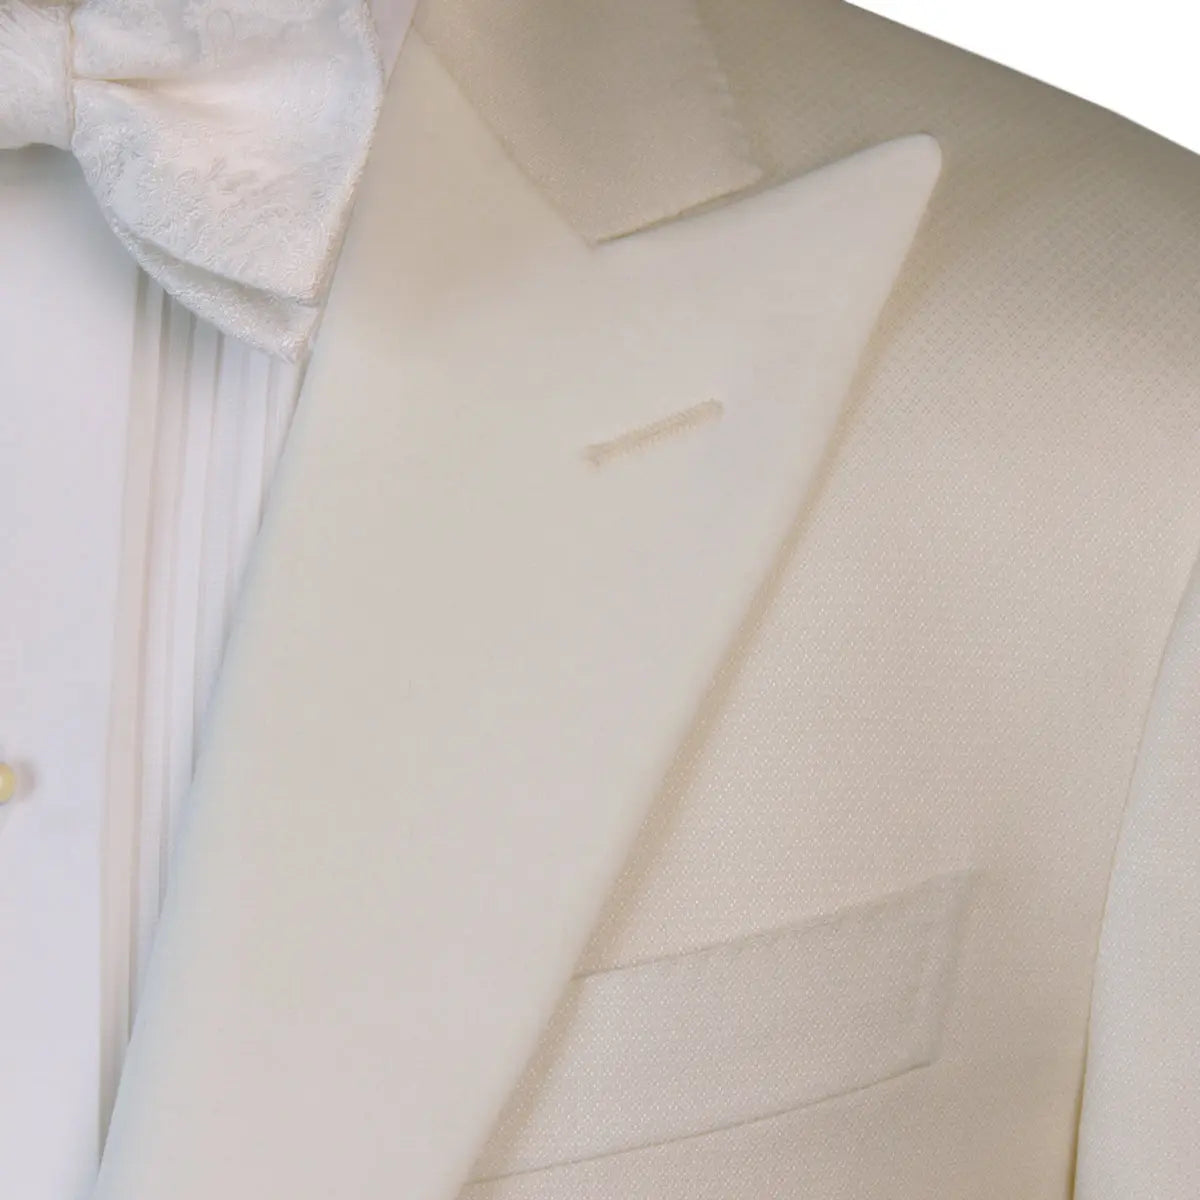 Cream Micro-Pattern Wool & Silk Tuxedo Jacket  Robert Old   